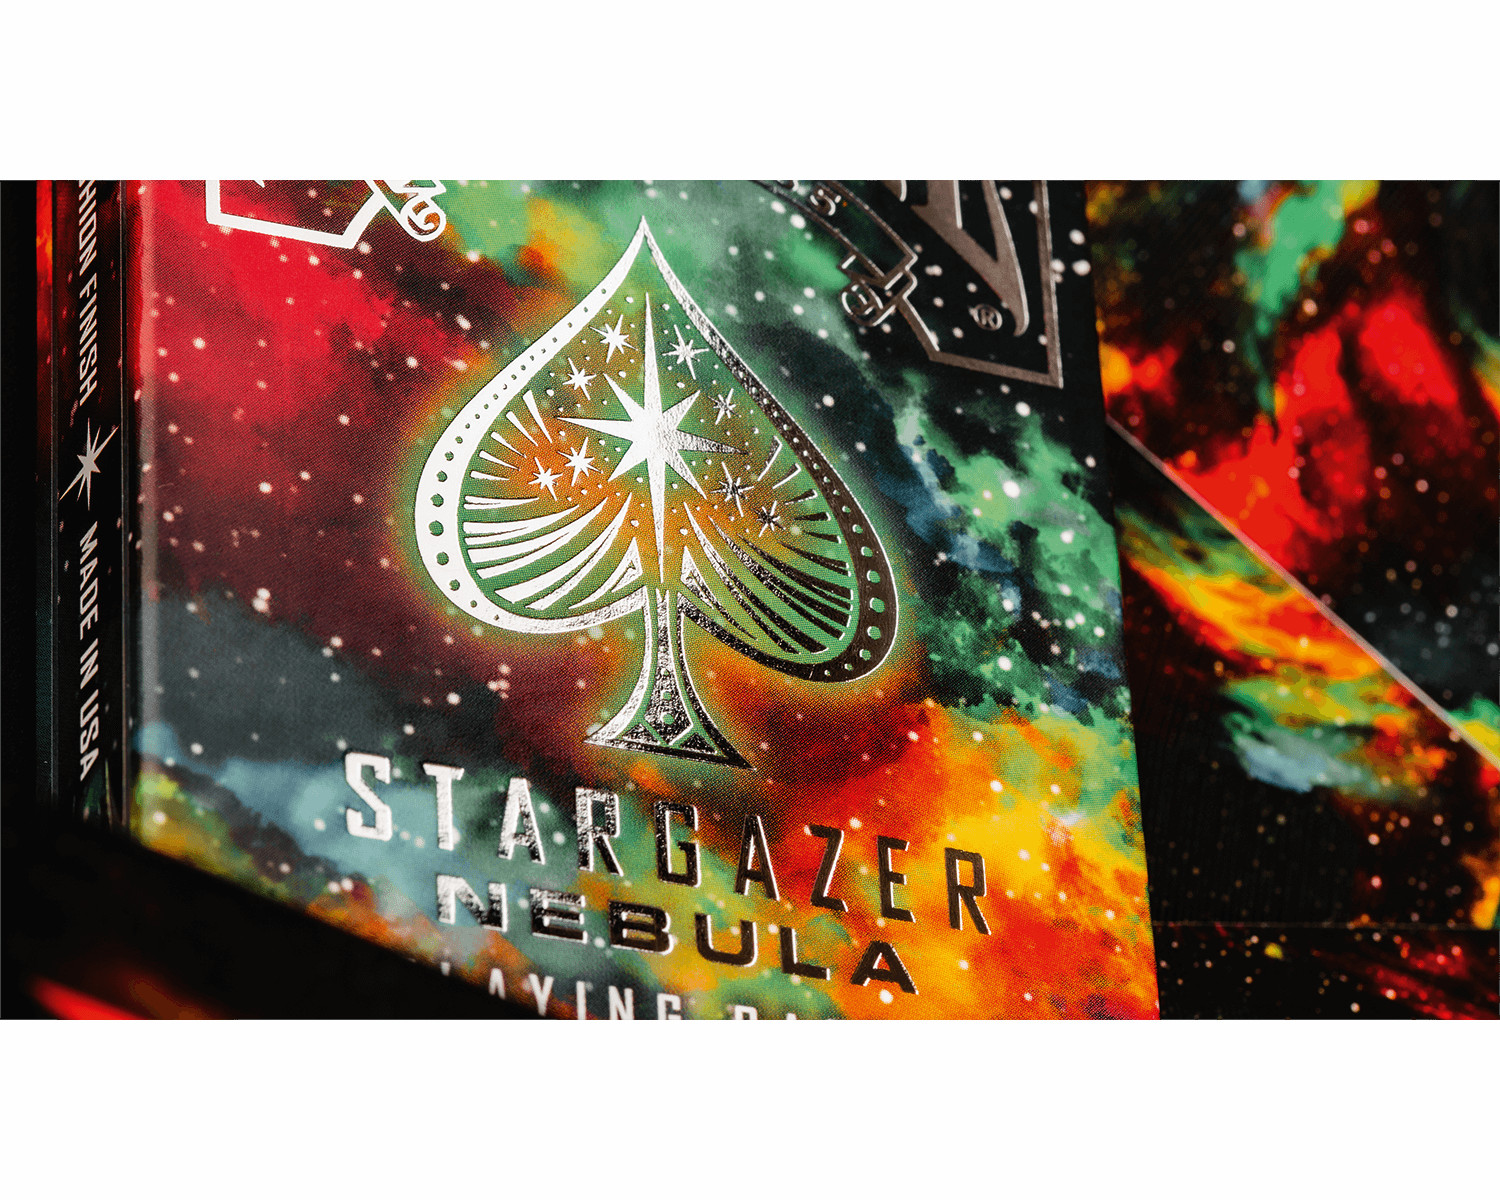 ASS ALTENBURGER Bicycle Stargazer Kartenspiel - Kartendeck Nebula